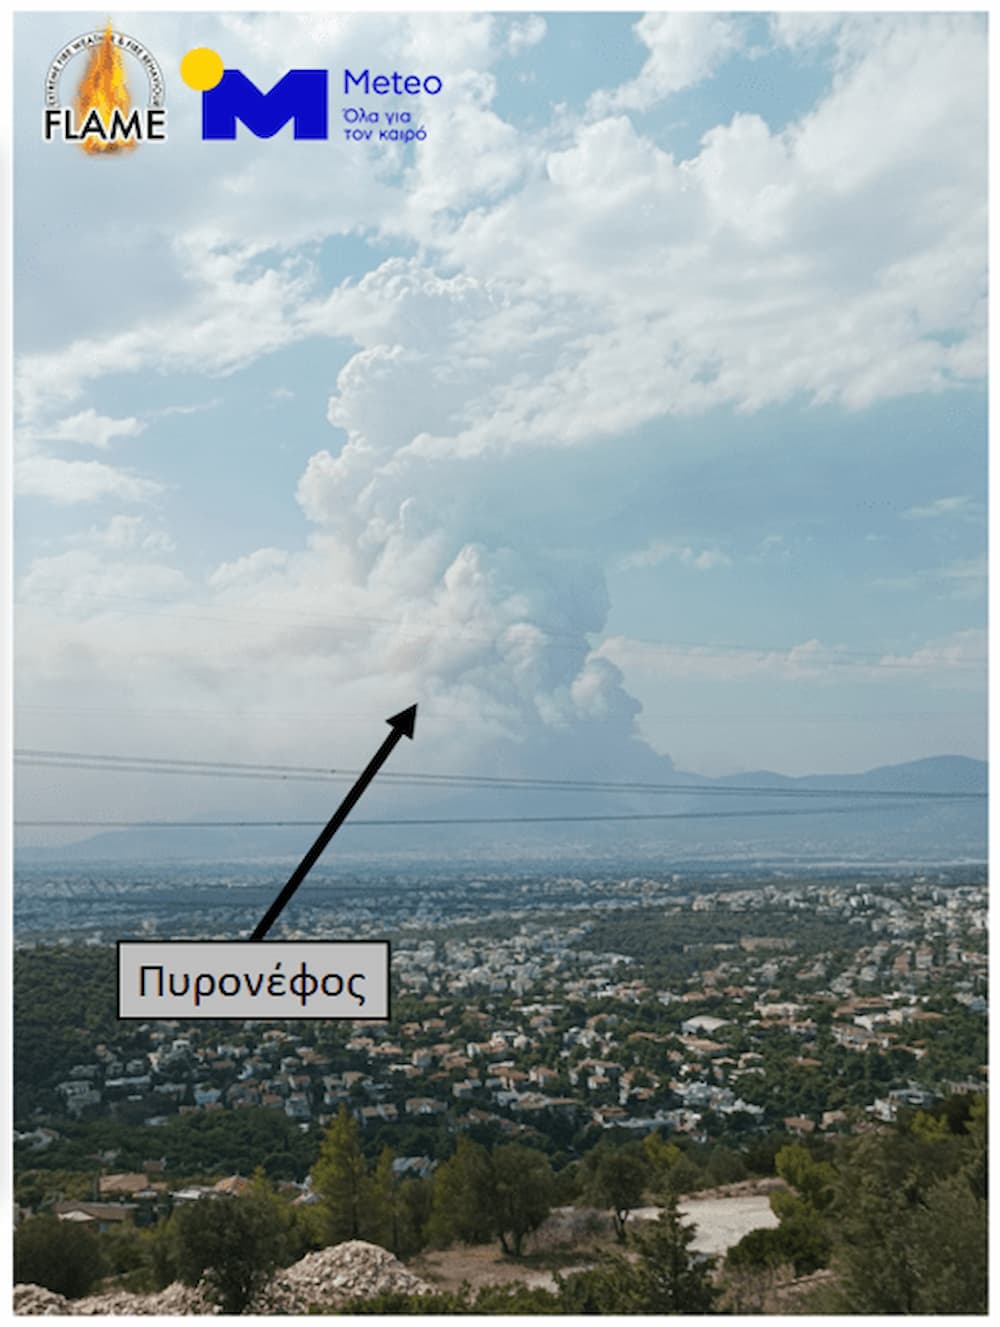 Pyronefos - Meteo: Τι είναι το «πυρονέφος» που εμφανίστηκε από τη φωτιά στην Πάρνηθα (εικόνες)